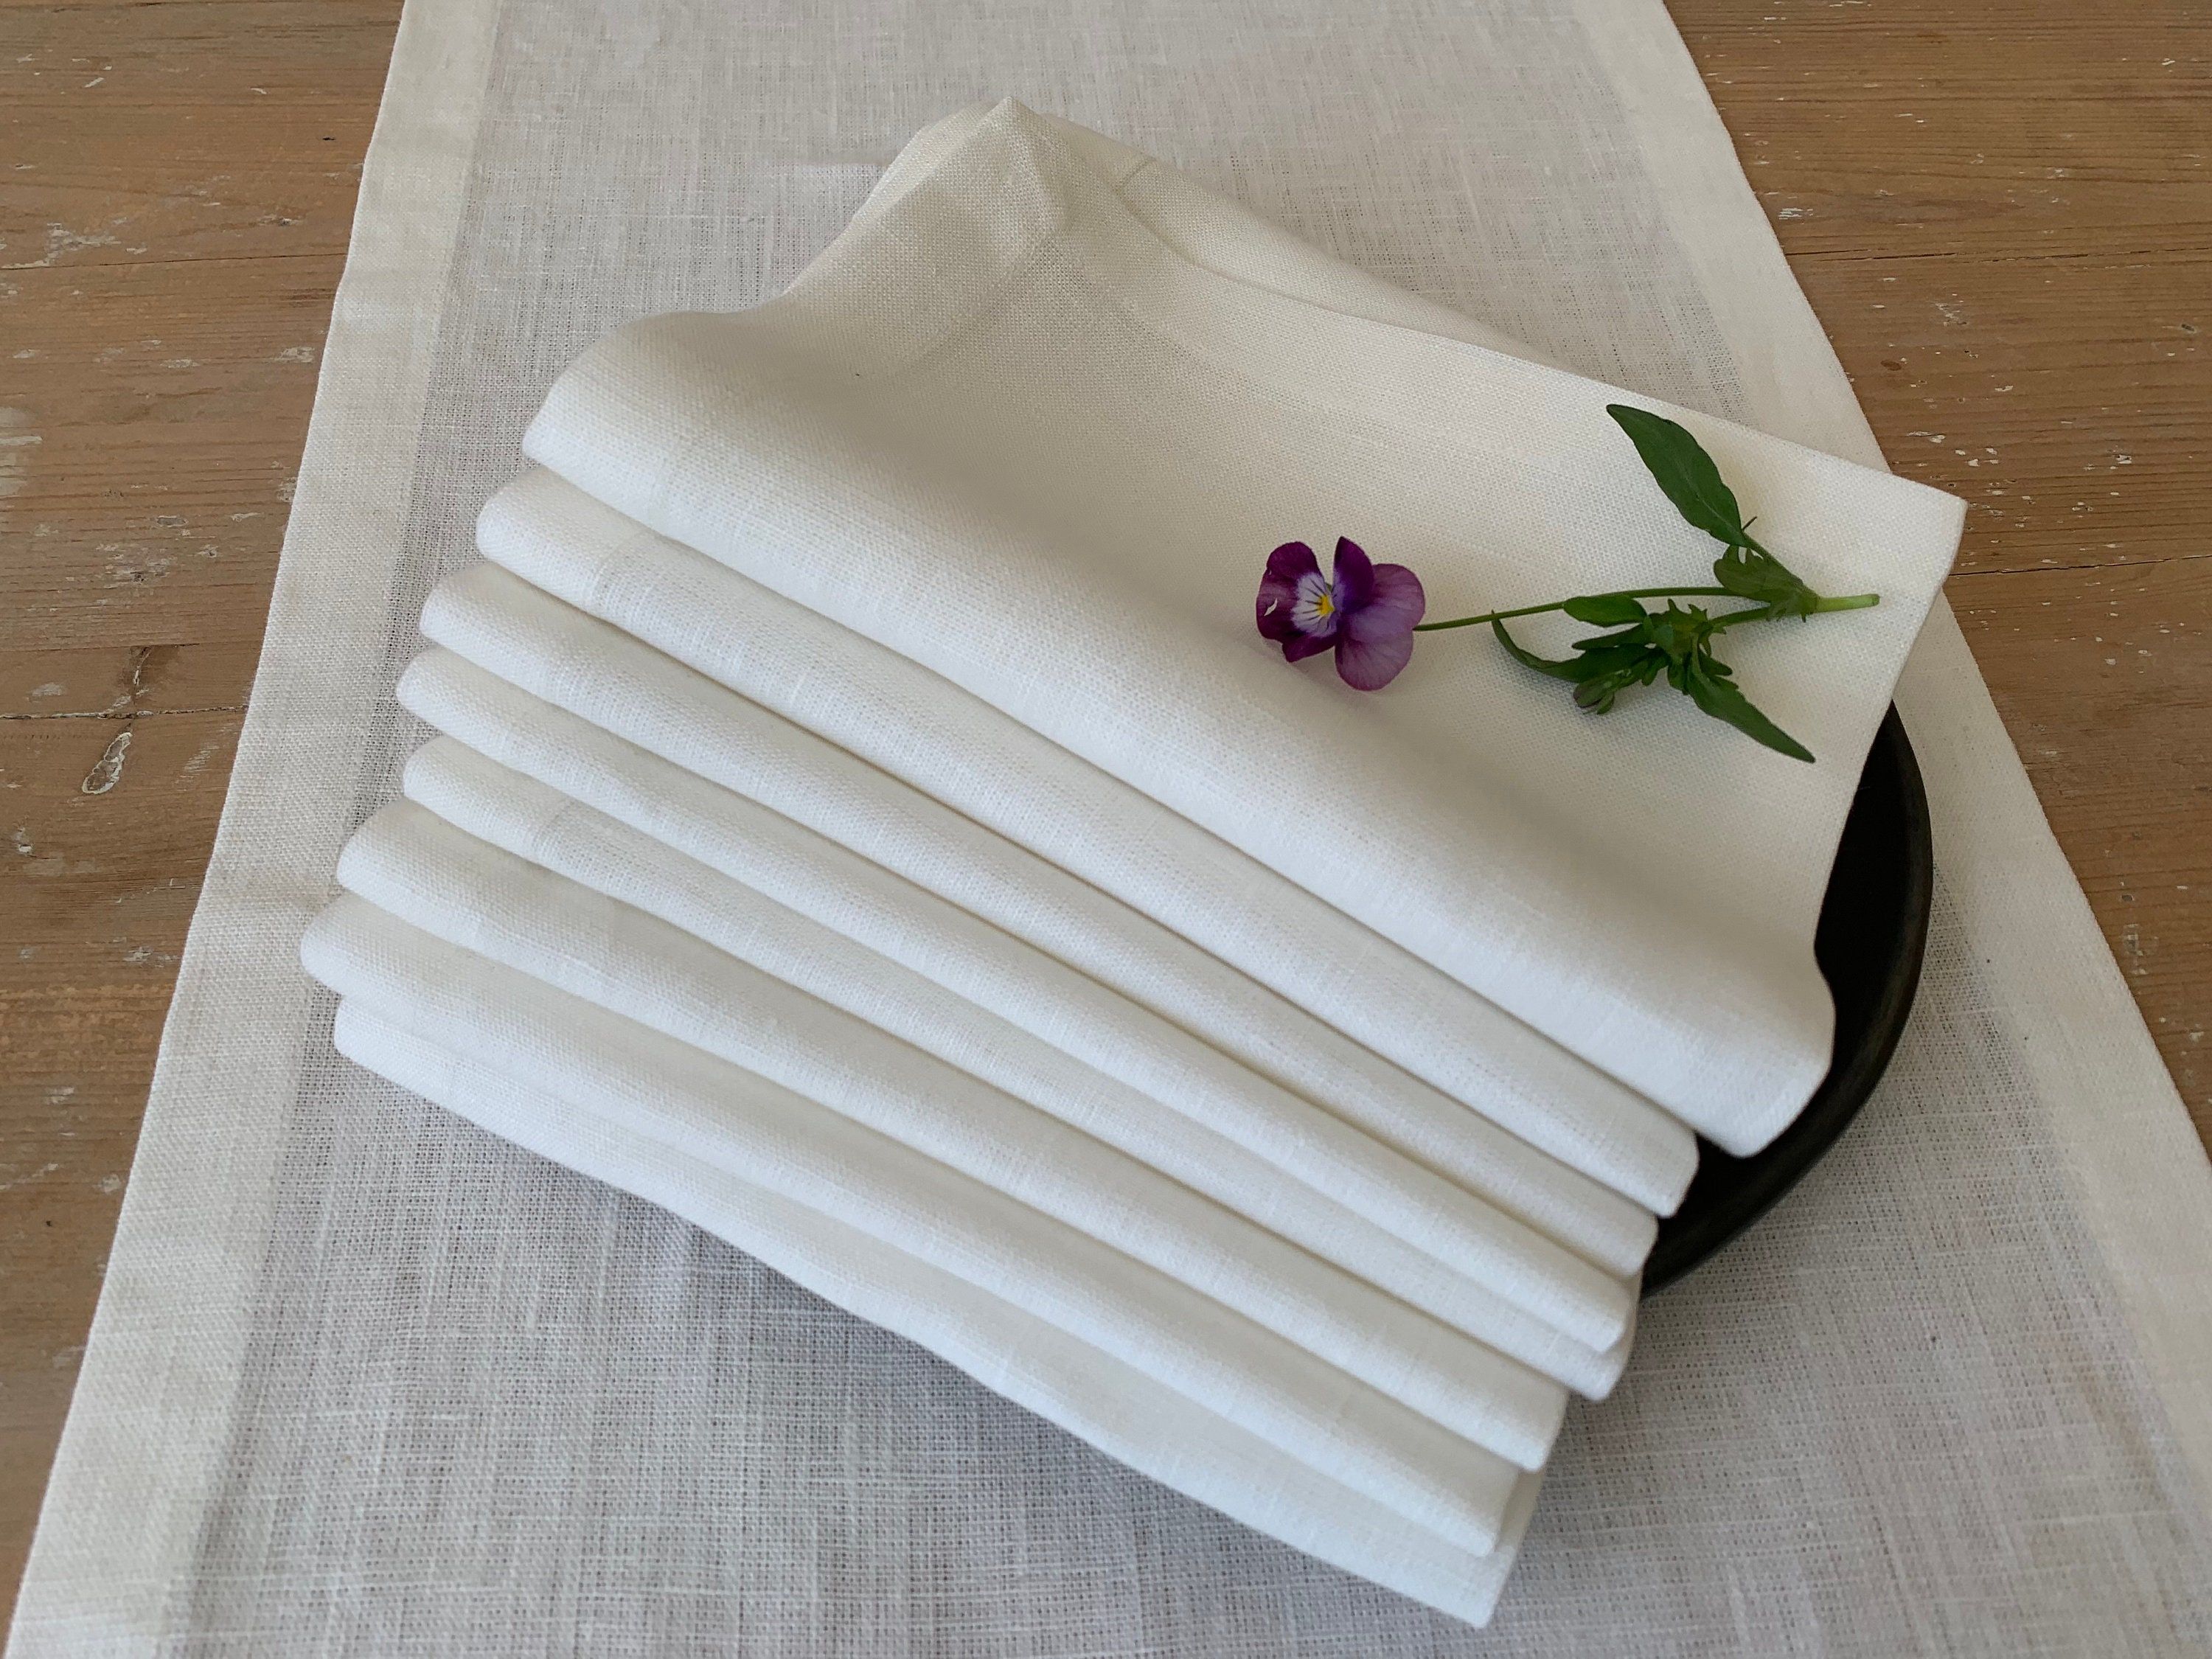 white napkins